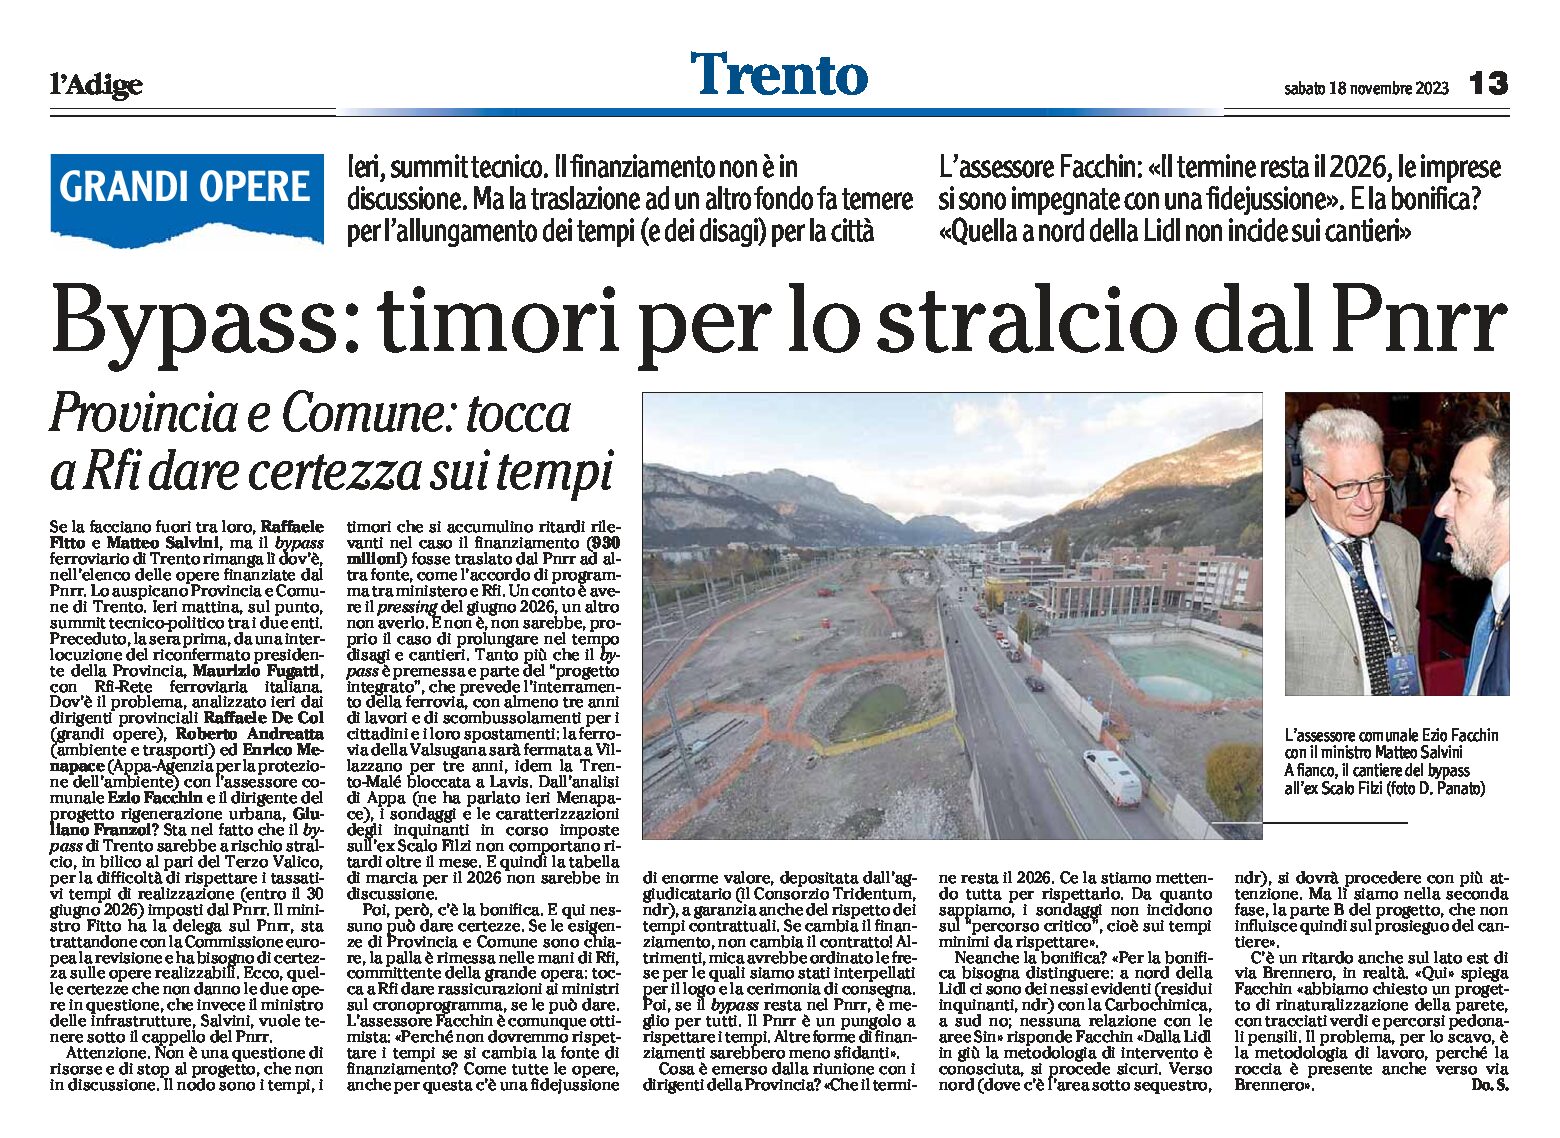 Trento, bypass: timori per lo stralcio dal Pnrr